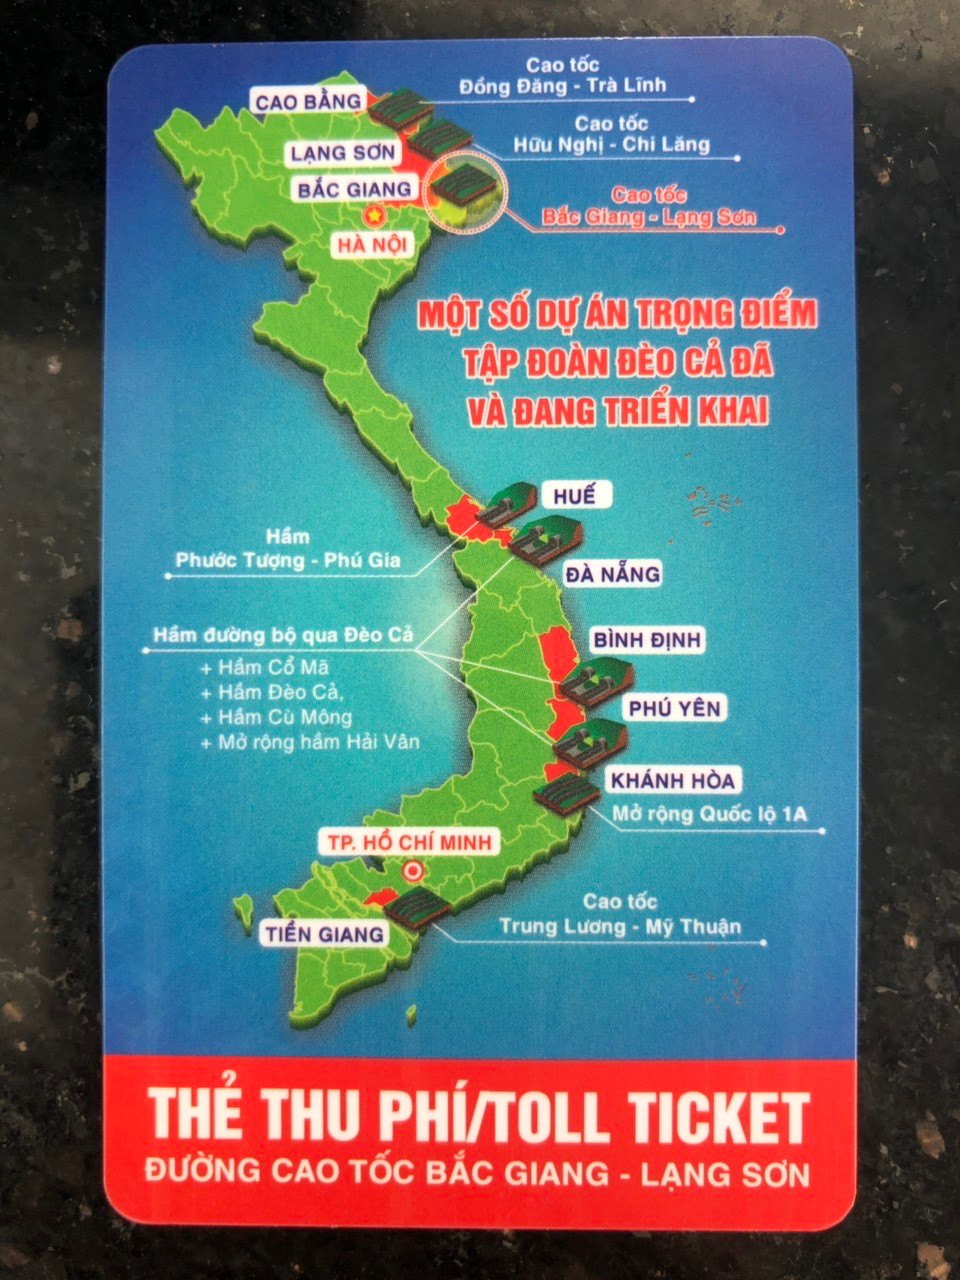 Chiếc thẻ thu phí cao tốc Bắc Giang-Lạng Sơn có thể hiện hình 2 quần đảo nhưng hơi mờ.